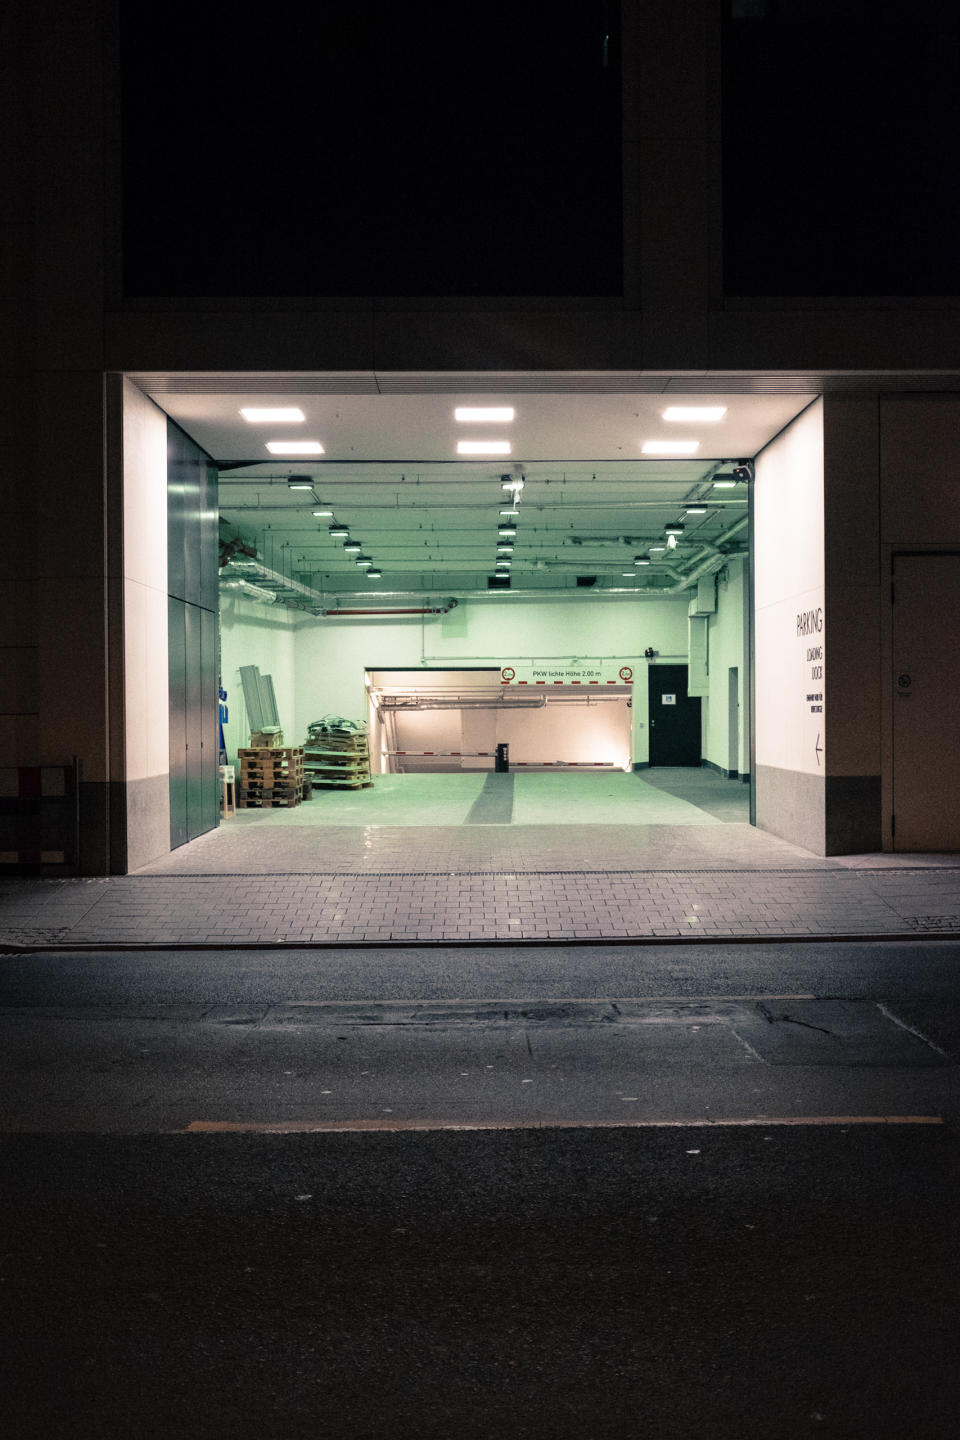 illuminated open warehouse